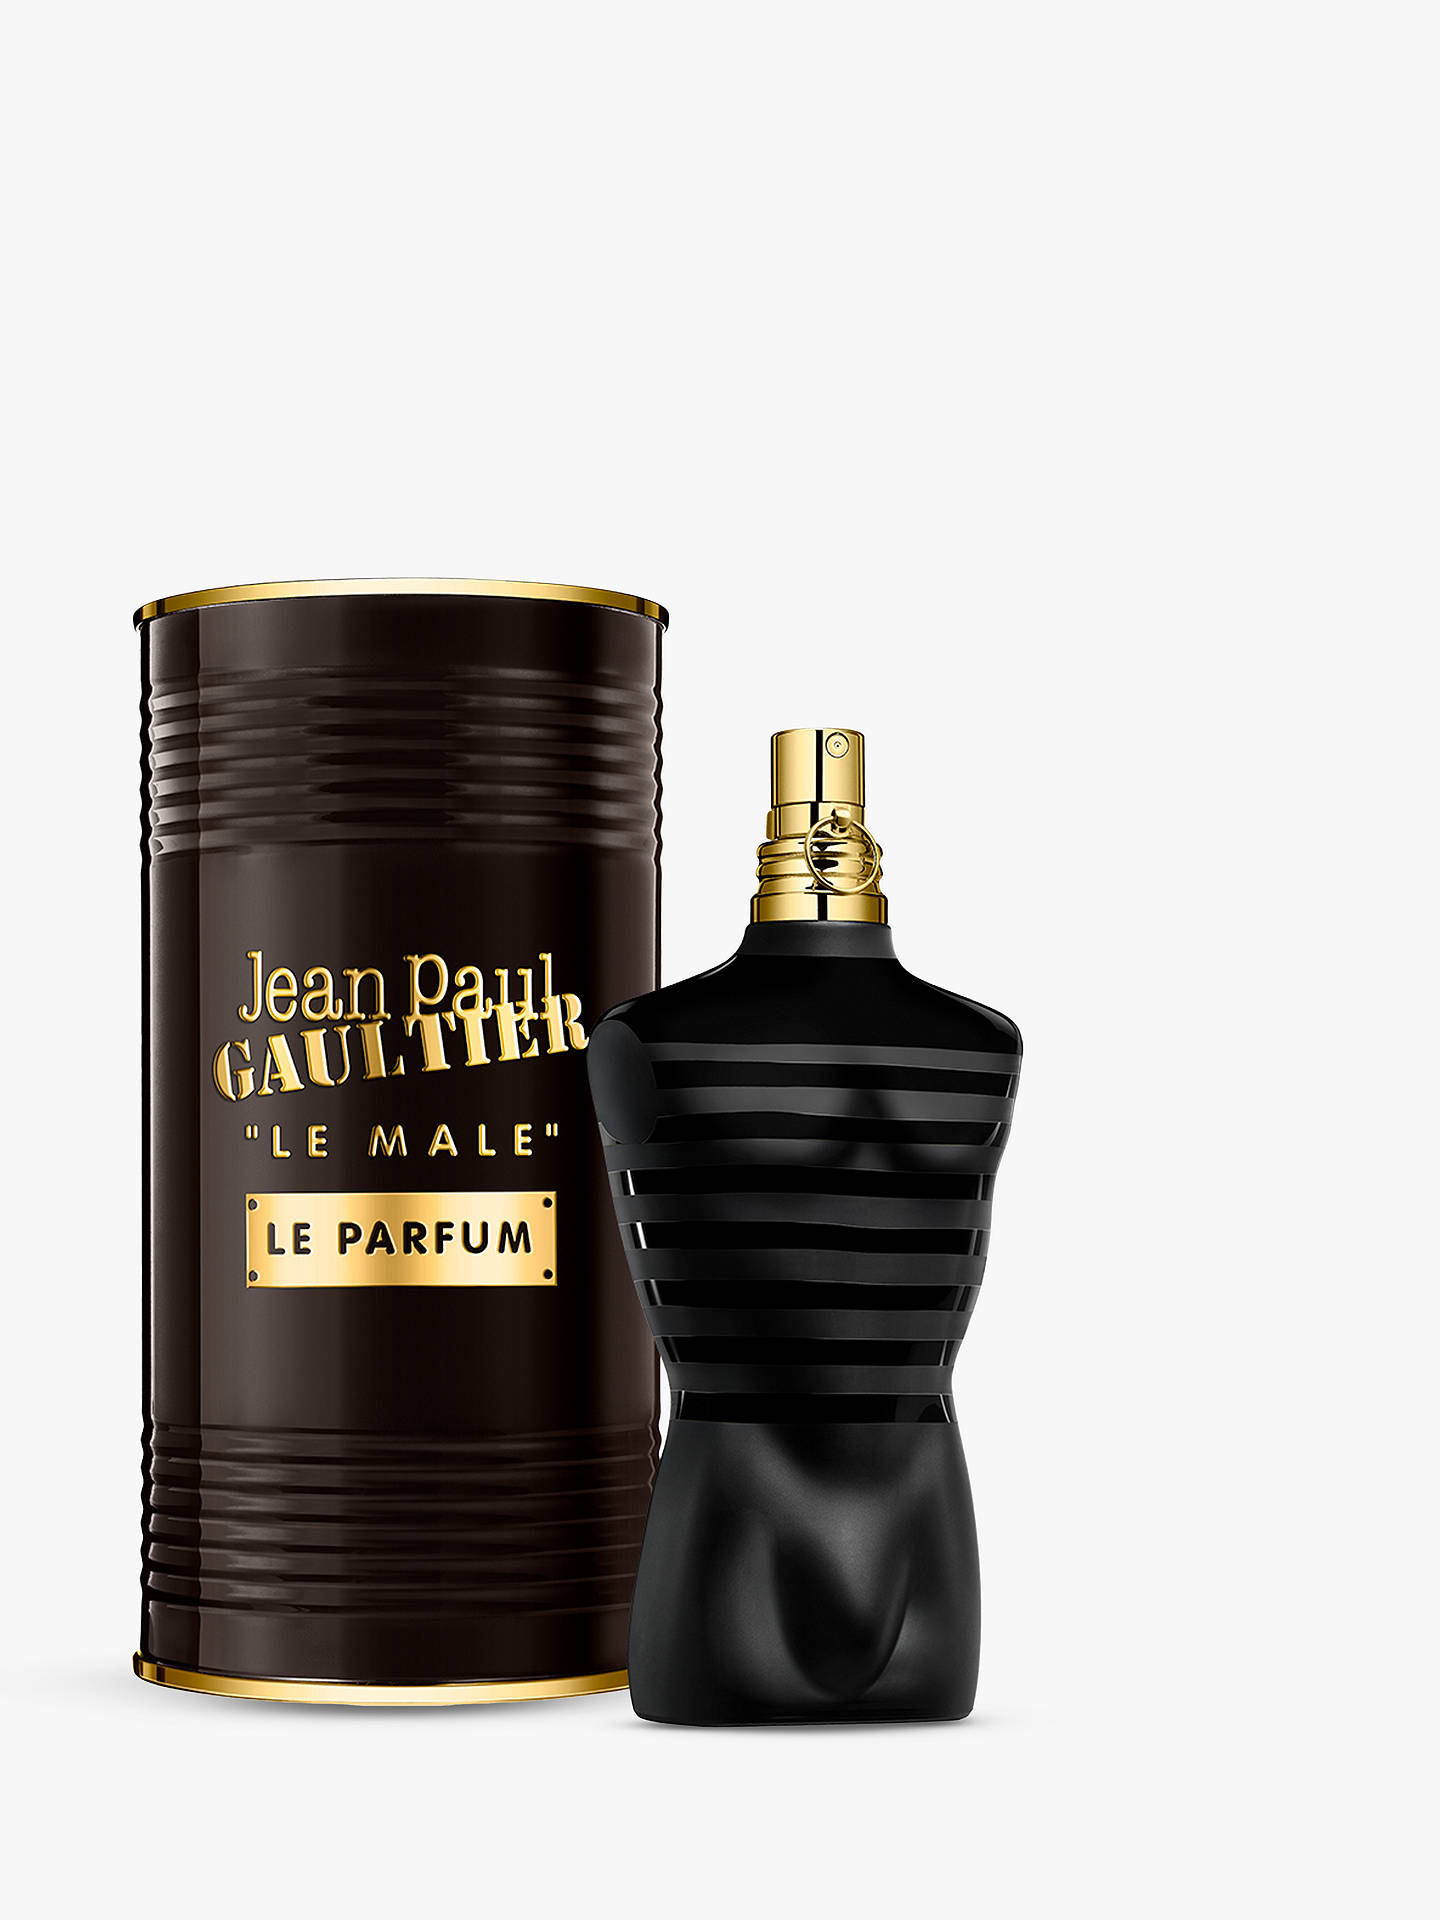 Jean Paul Gaultier Le Male Le Parfum at John Lewis & Partners